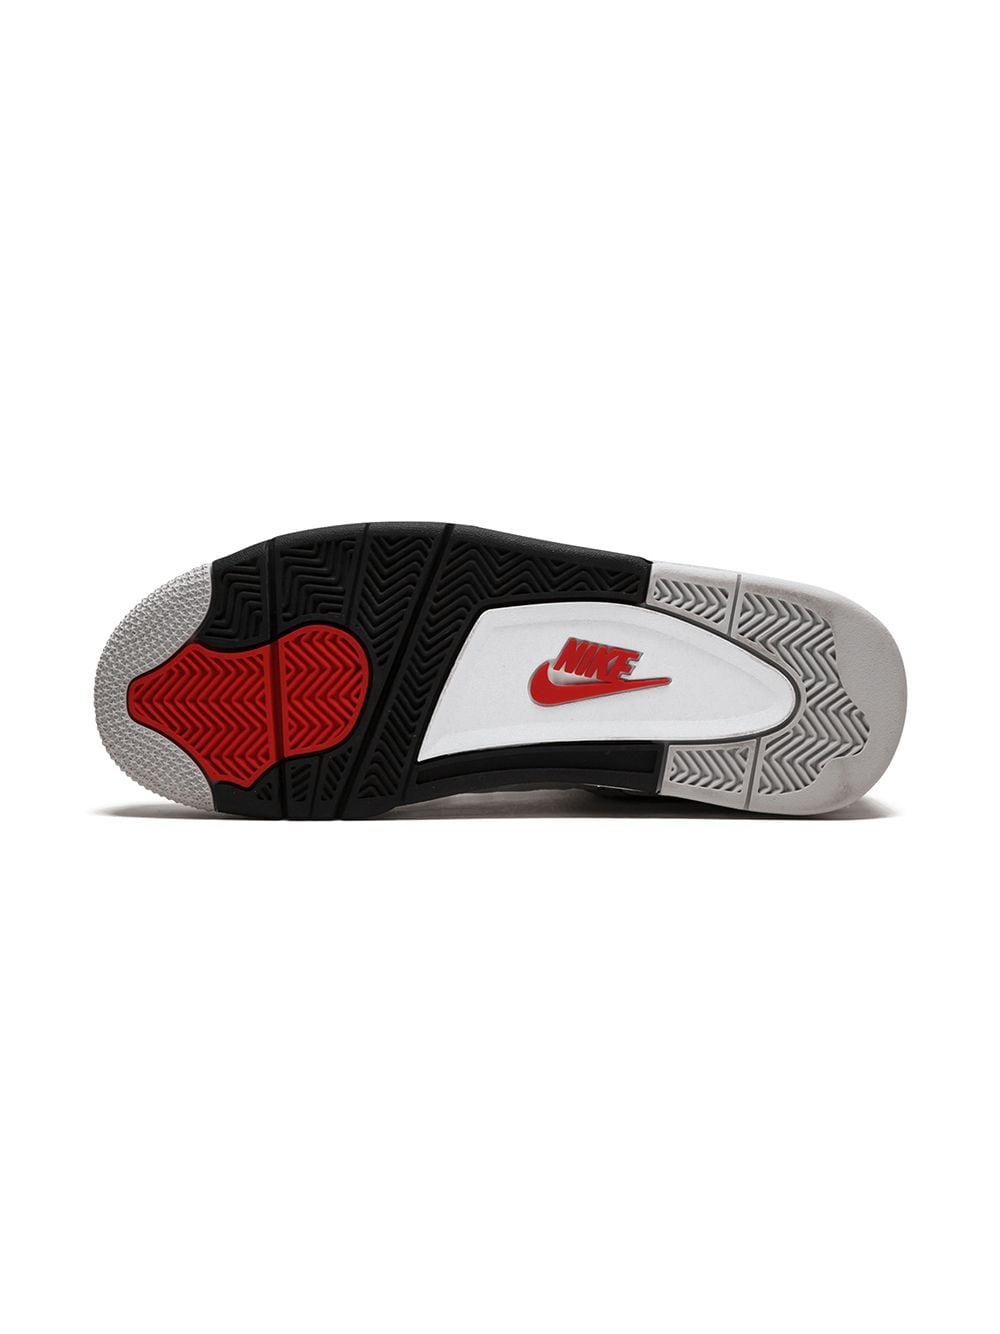 Giày Nike Air Jordan 4 Retro White Cement Rep 1:1